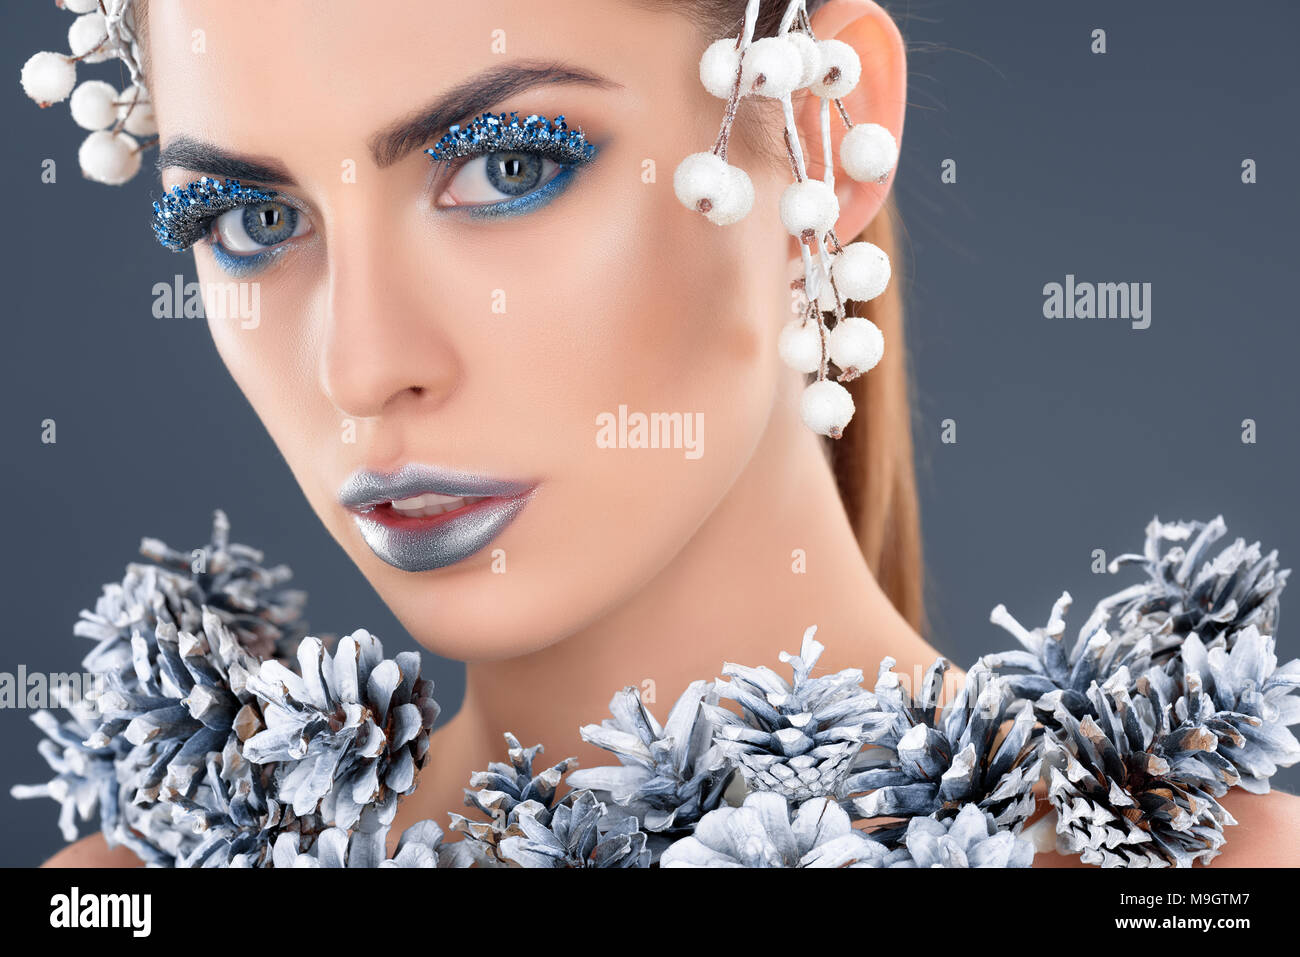 Maquillaje con purpurina fotografías e imágenes de alta resolución - Página  2 - Alamy